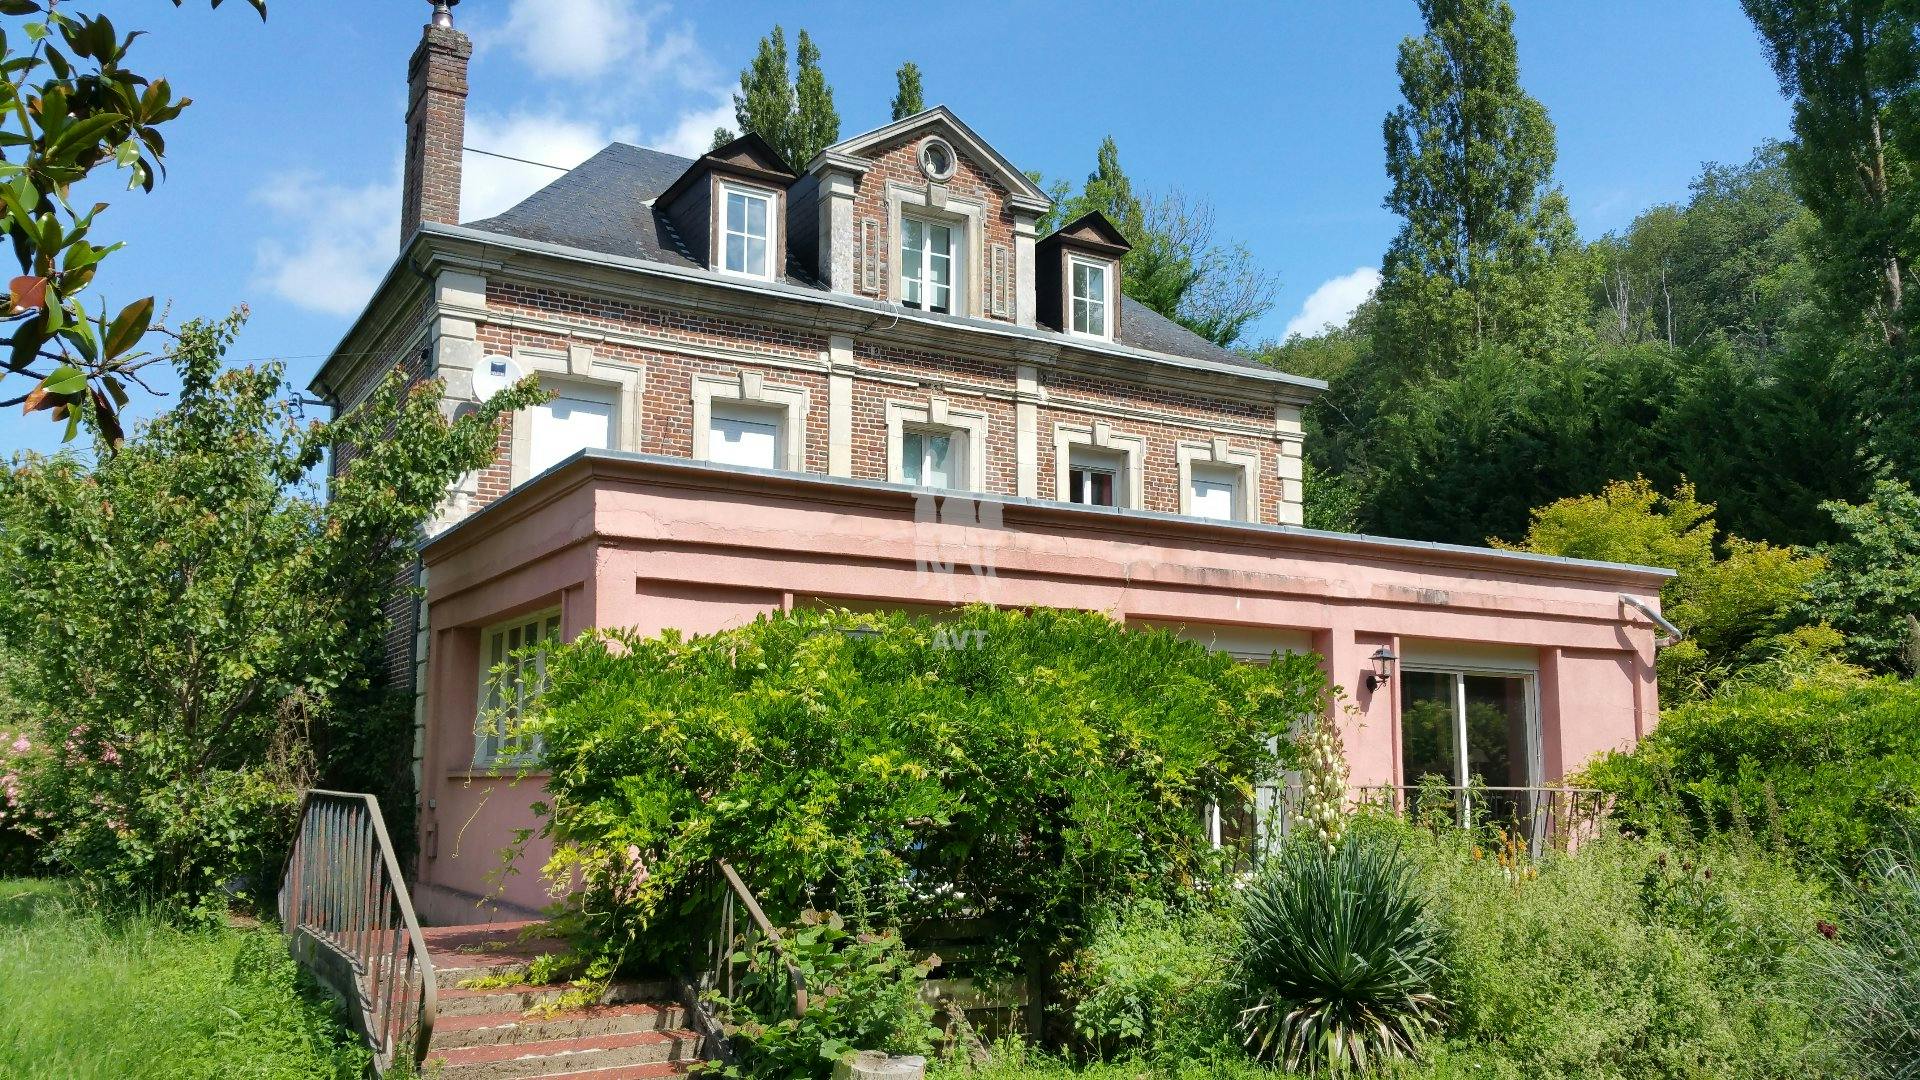 A vendre , Le Neubourg ( Eure ) , propriété avec 290  m2 habitables , 10 pièces , 6 chambres , terrain 30 300 m2